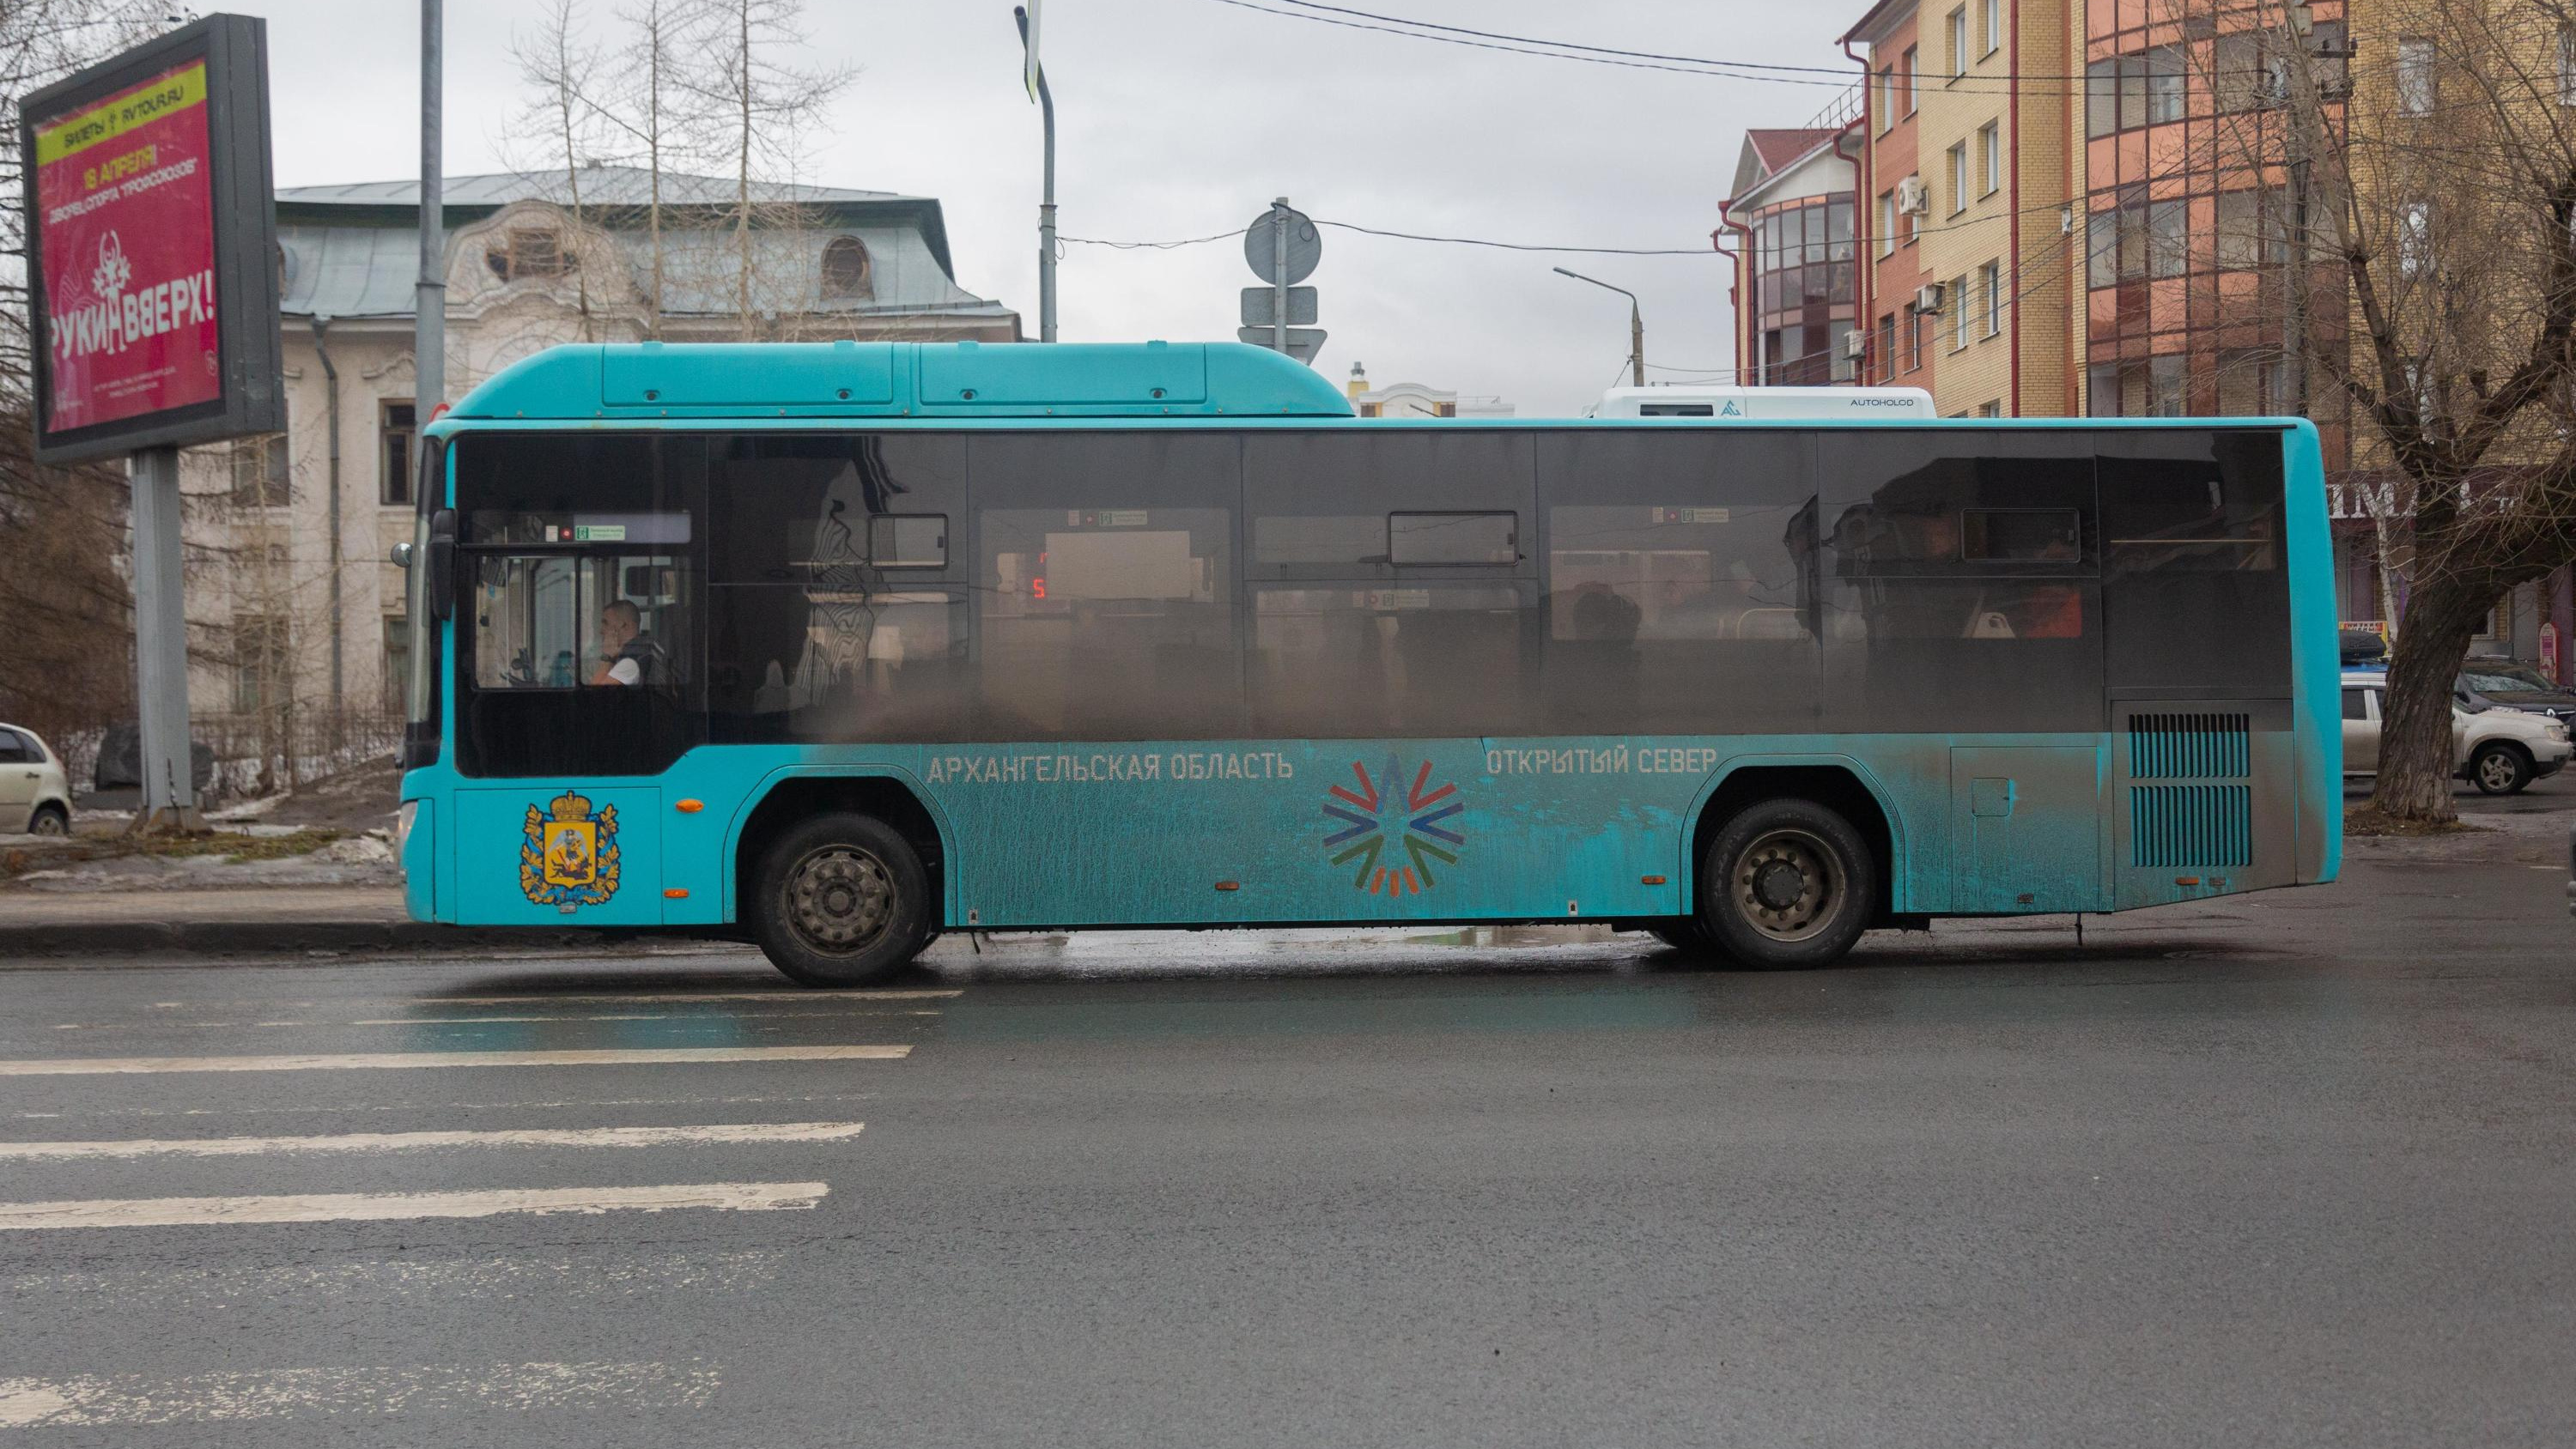 Большинство автобусов в Архангельске белорусские: что с ними не так (или с водителями?)